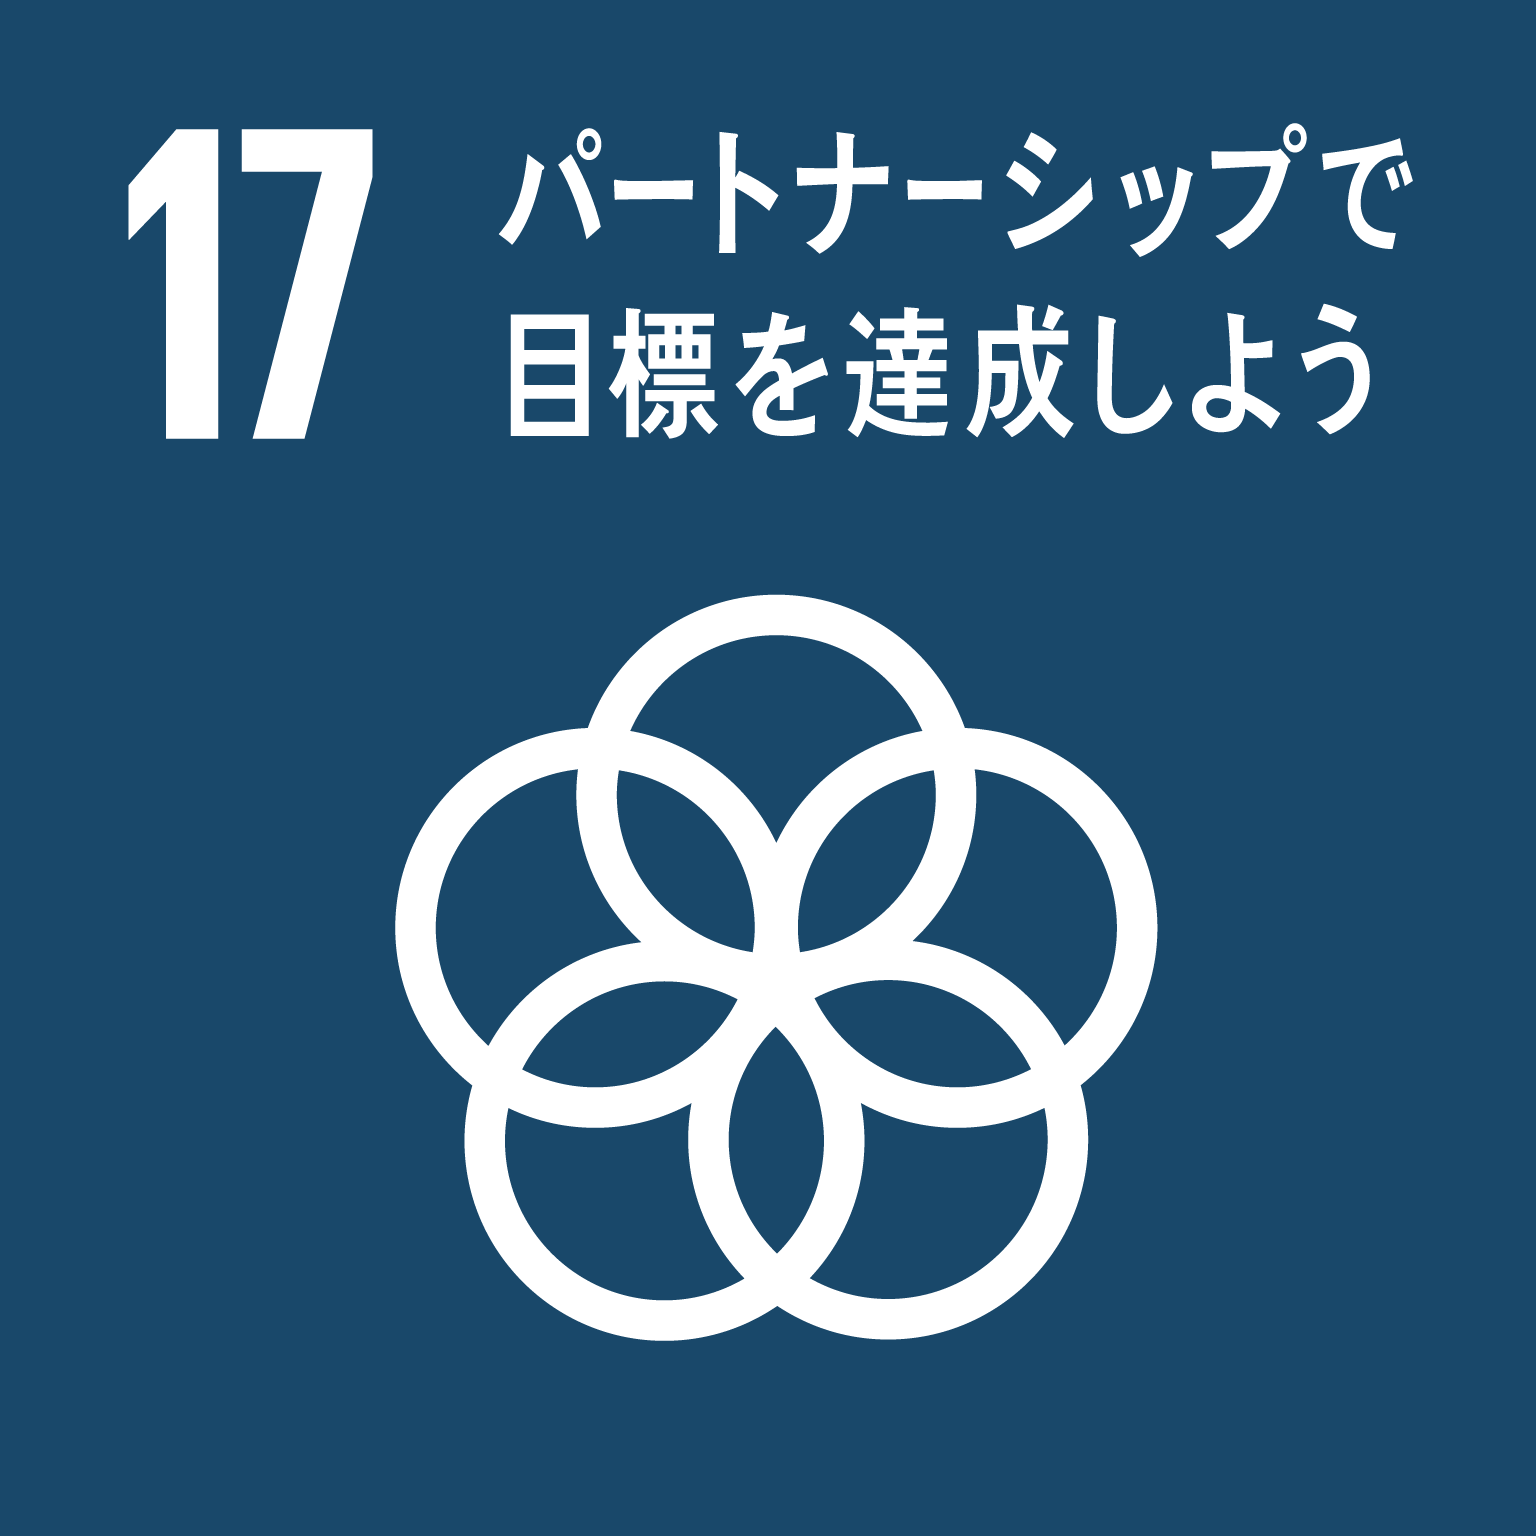 「17.パートナーシップで目標を達成しよう」の文字と目標17のロゴ